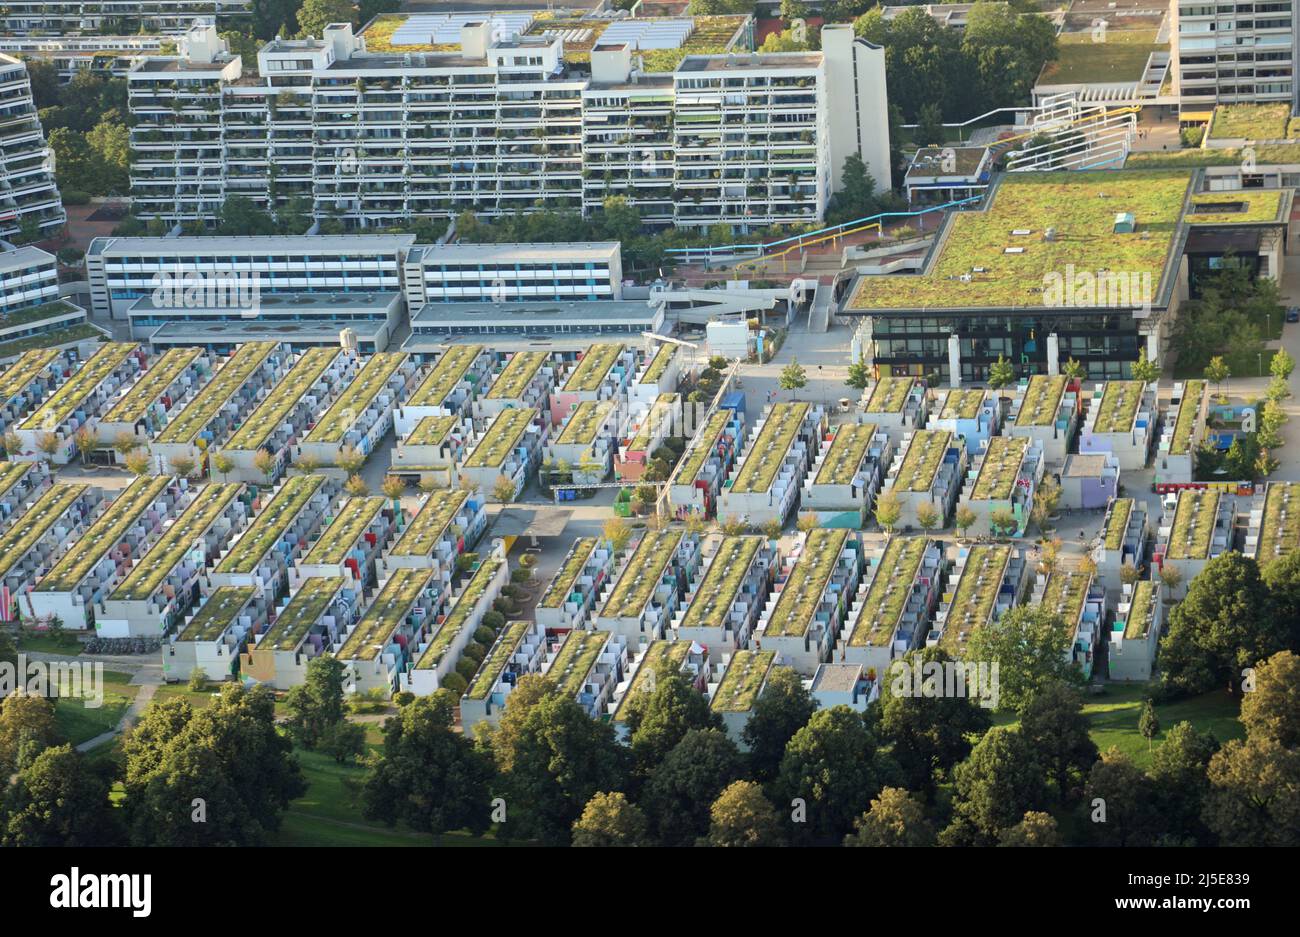 München, München, Deutschland - 25. August 2021: Blick von oben auf das OLYMPISCHE DORF mit Häusern und Wohnungen, die während der Olympischen Sommerspiele 1972 genutzt wurden Stockfoto